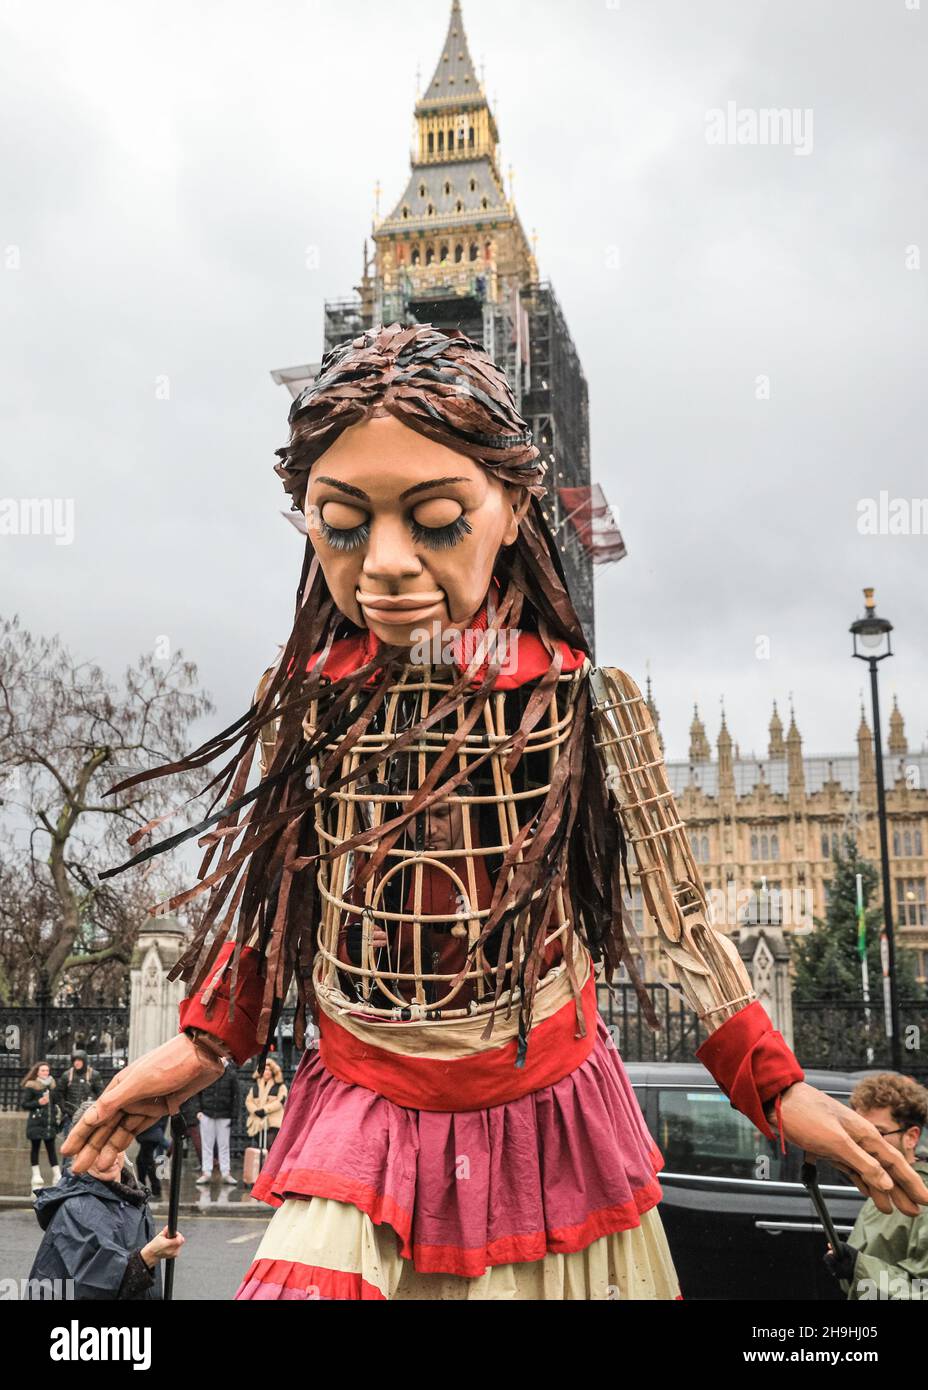 Westminster, Londres, Royaume-Uni.7 décembre 2021.Little Amal, la marionnette géante qui représente une petite fille réfugiée, est de retour aujourd'hui dans le centre de Londres et hors du Parlement pour soutenir une protestation contre le projet de loi sur la nationalité et les frontières, qui pourrait potentiellement créer des obstacles aux réfugiés et autres demandeurs d'asile dans le système d'asile du Royaume-Uni.La marionnette avait été sur un long voyage de migrants de la Syrie au Royaume-Uni avec de nombreuses apparitions cet été et cet automne.Credit: Imagetraceur/Alamy Live News Banque D'Images